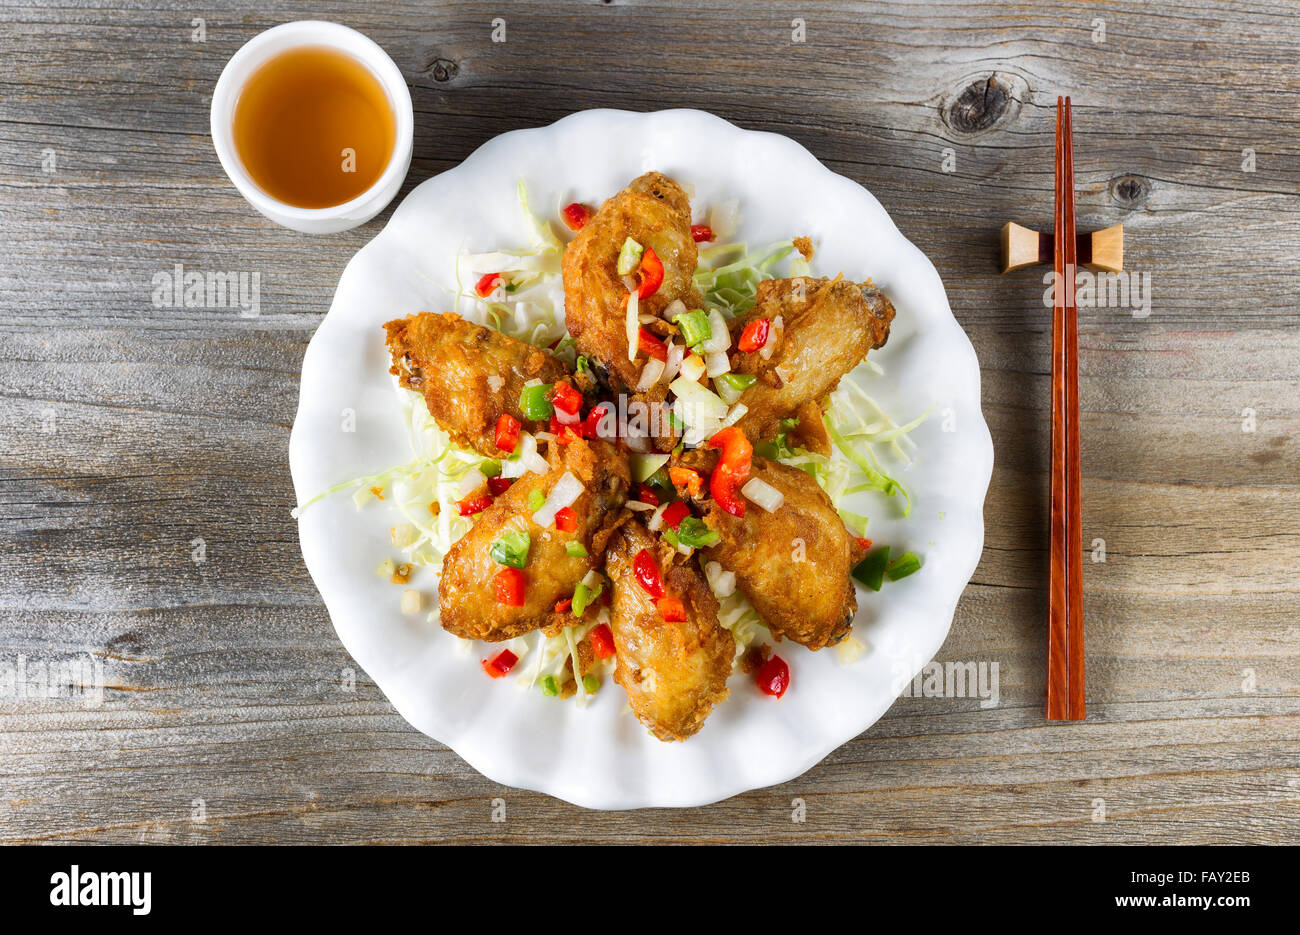 Vista superior de estilo asiático frito alitas de pollo en la placa blanca  con aderezos. El té verde y los palillos en el soporte. Boa de madera  rústica Fotografía de stock -